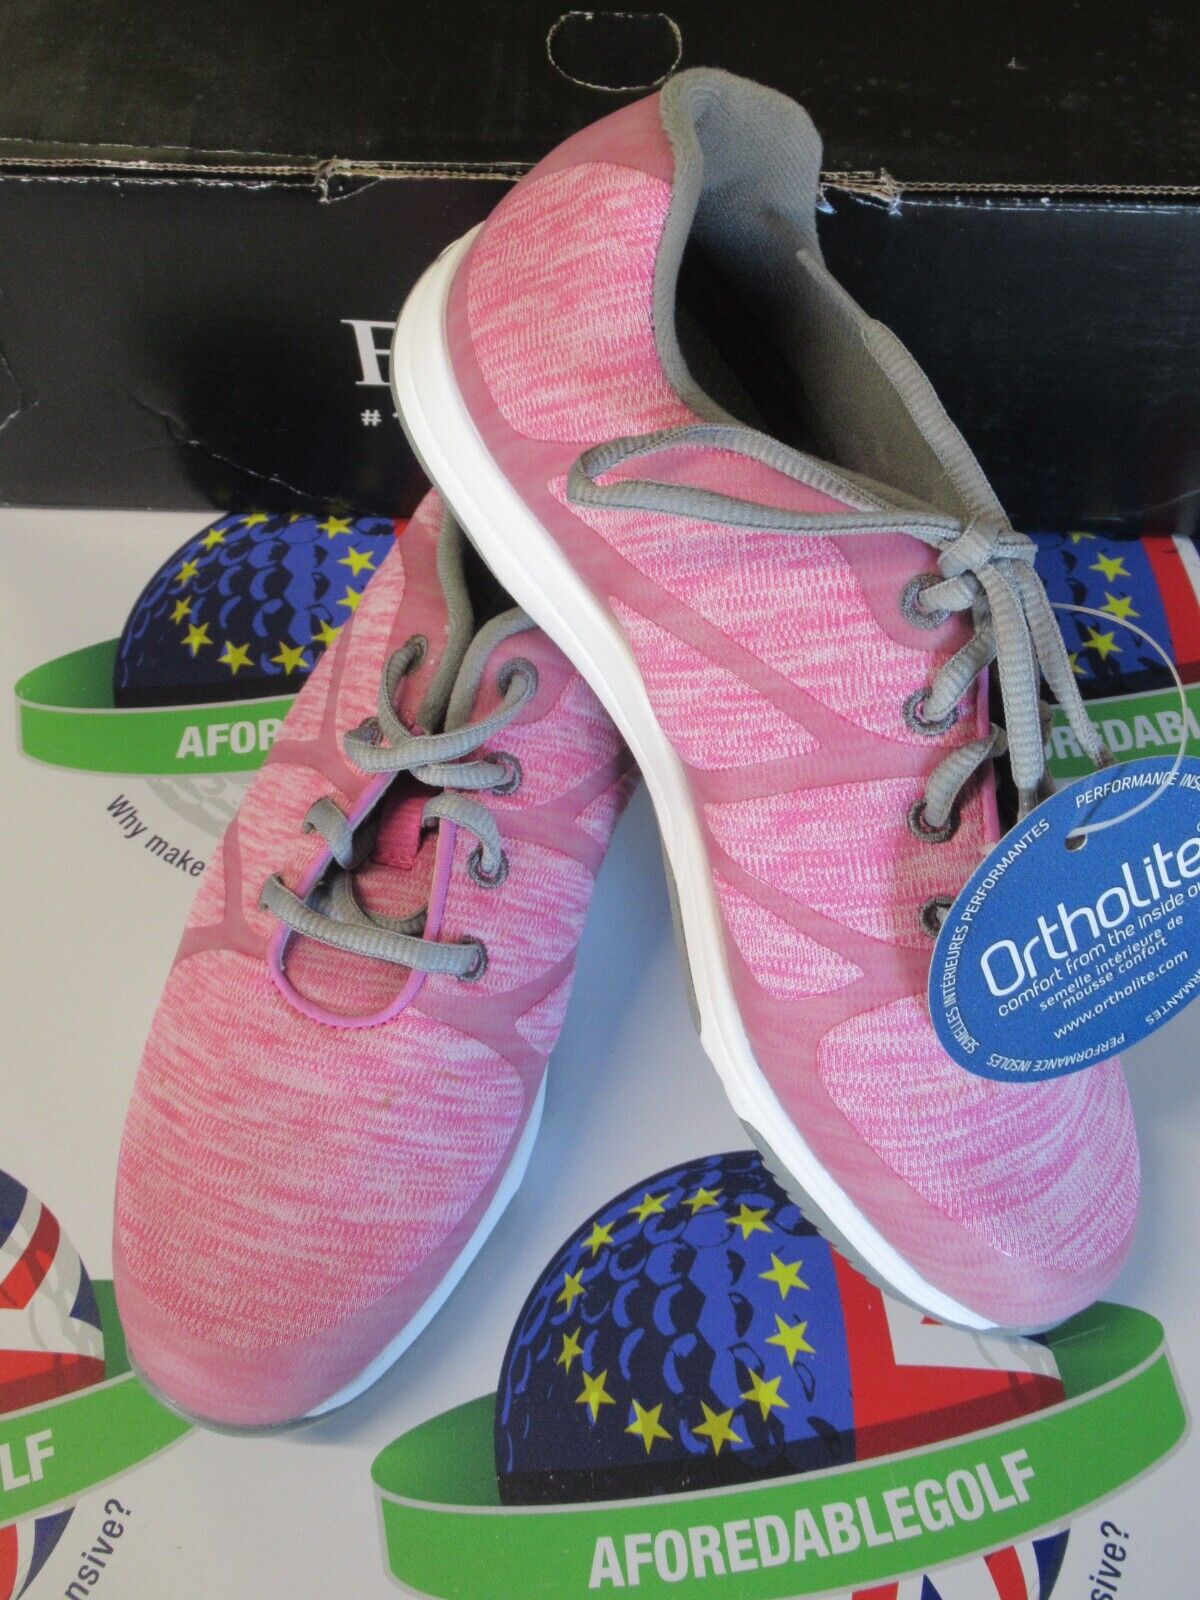 footjoy leisure ladies golf shoes pink/white/grey 92906k uk size 4 L